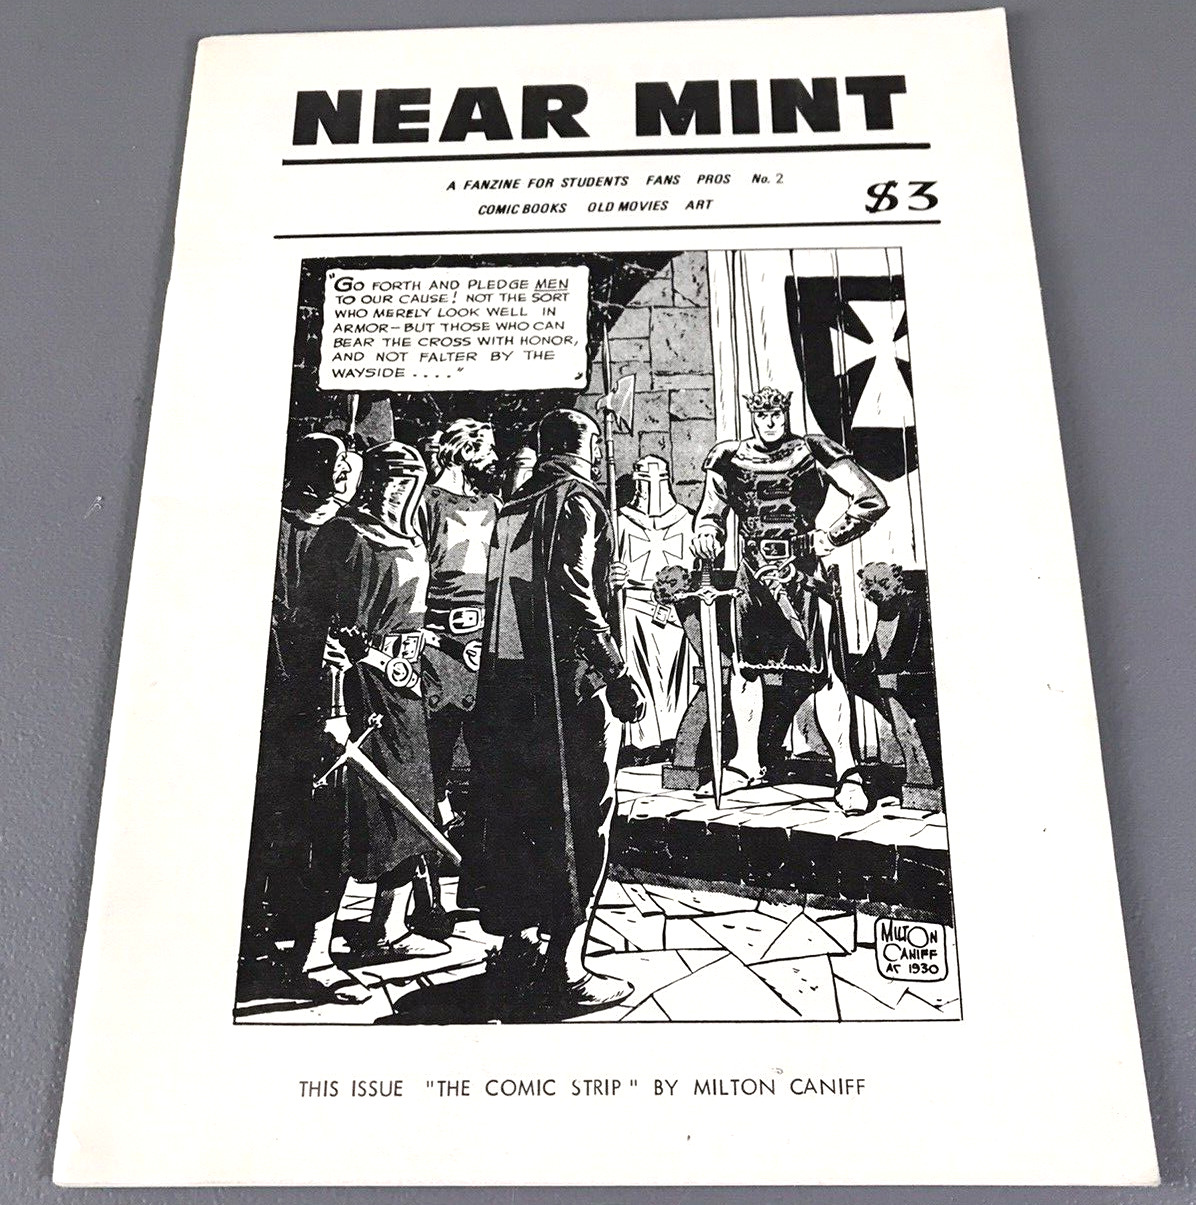 RARE Vintage 1980 NEAR MINT No. 2 Fanzine Comics Al Dellinges Publication